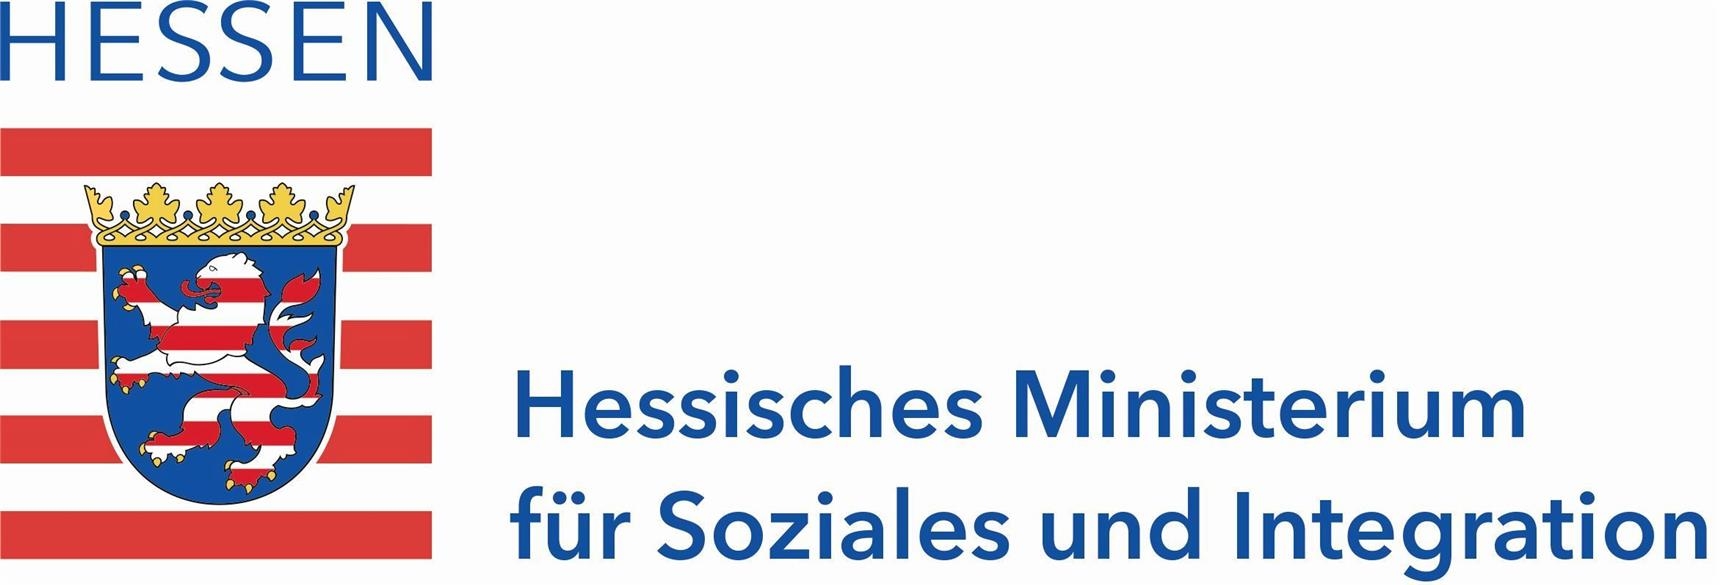 Logo HSMI Hessisches Ministerium (HSMI)